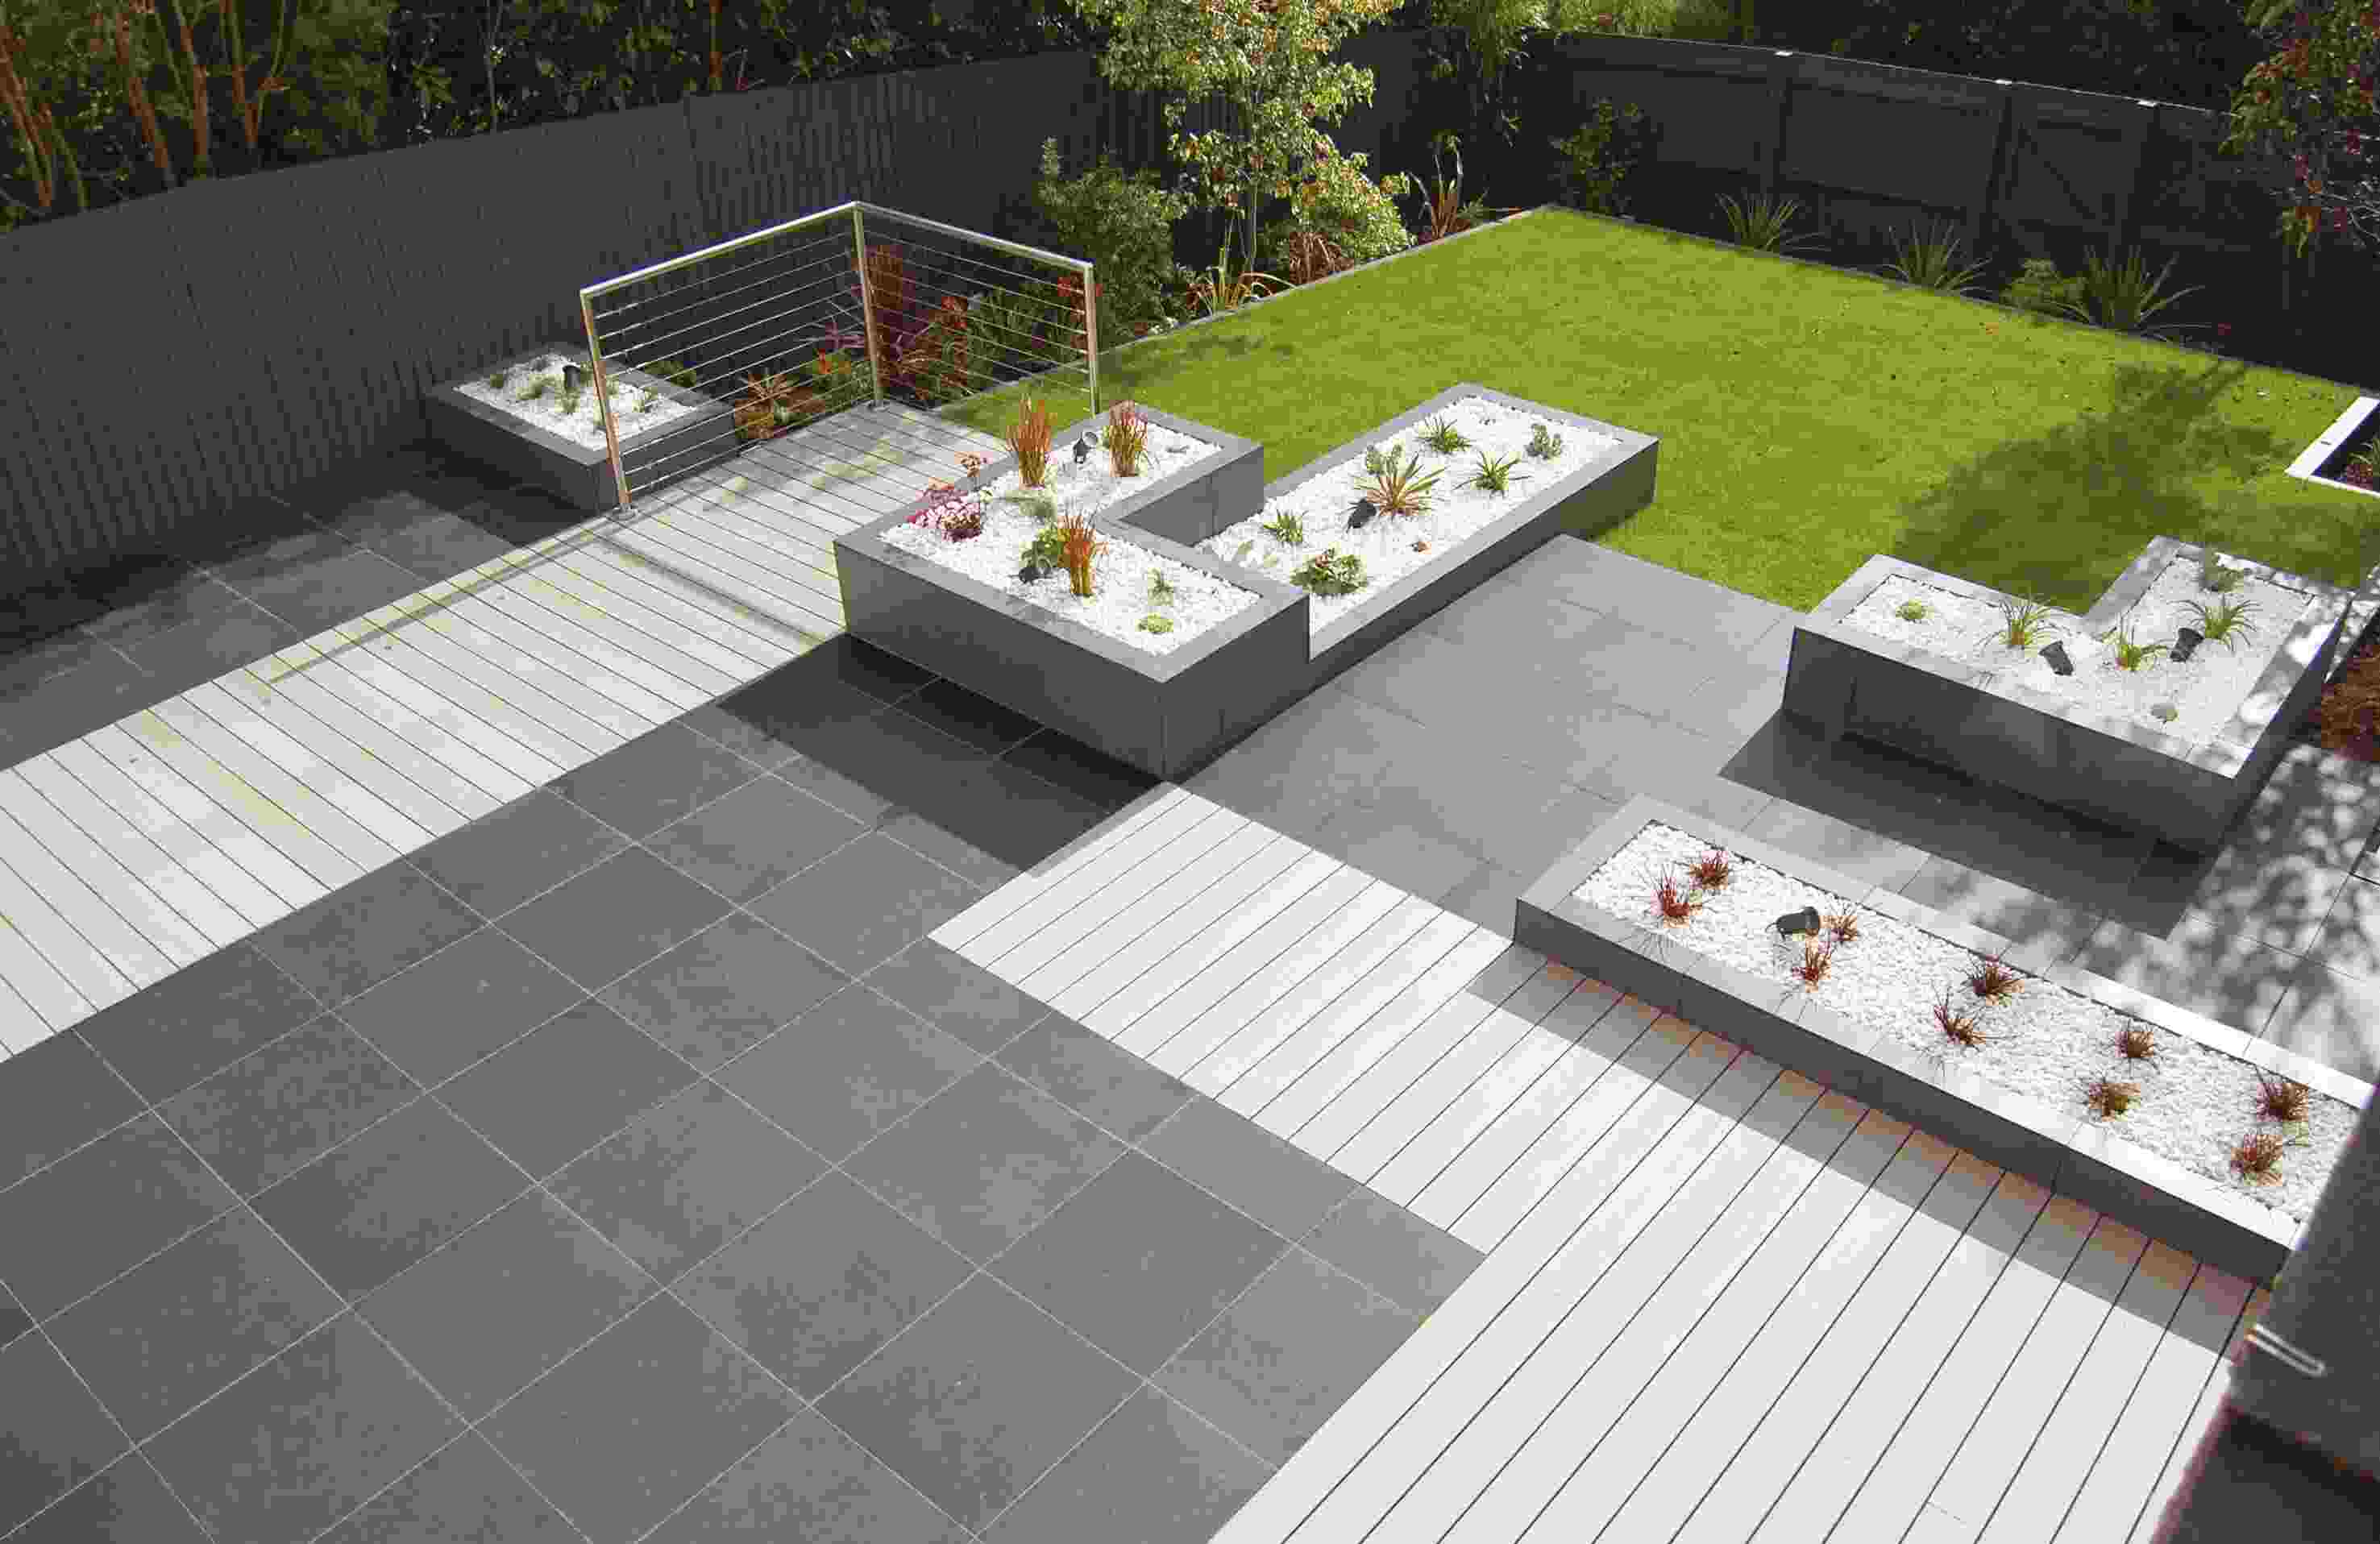 Garten und Terrasse Ideen Stein Boden Gras Pflanzen anbauen Gartentrends Terrasse gestalten